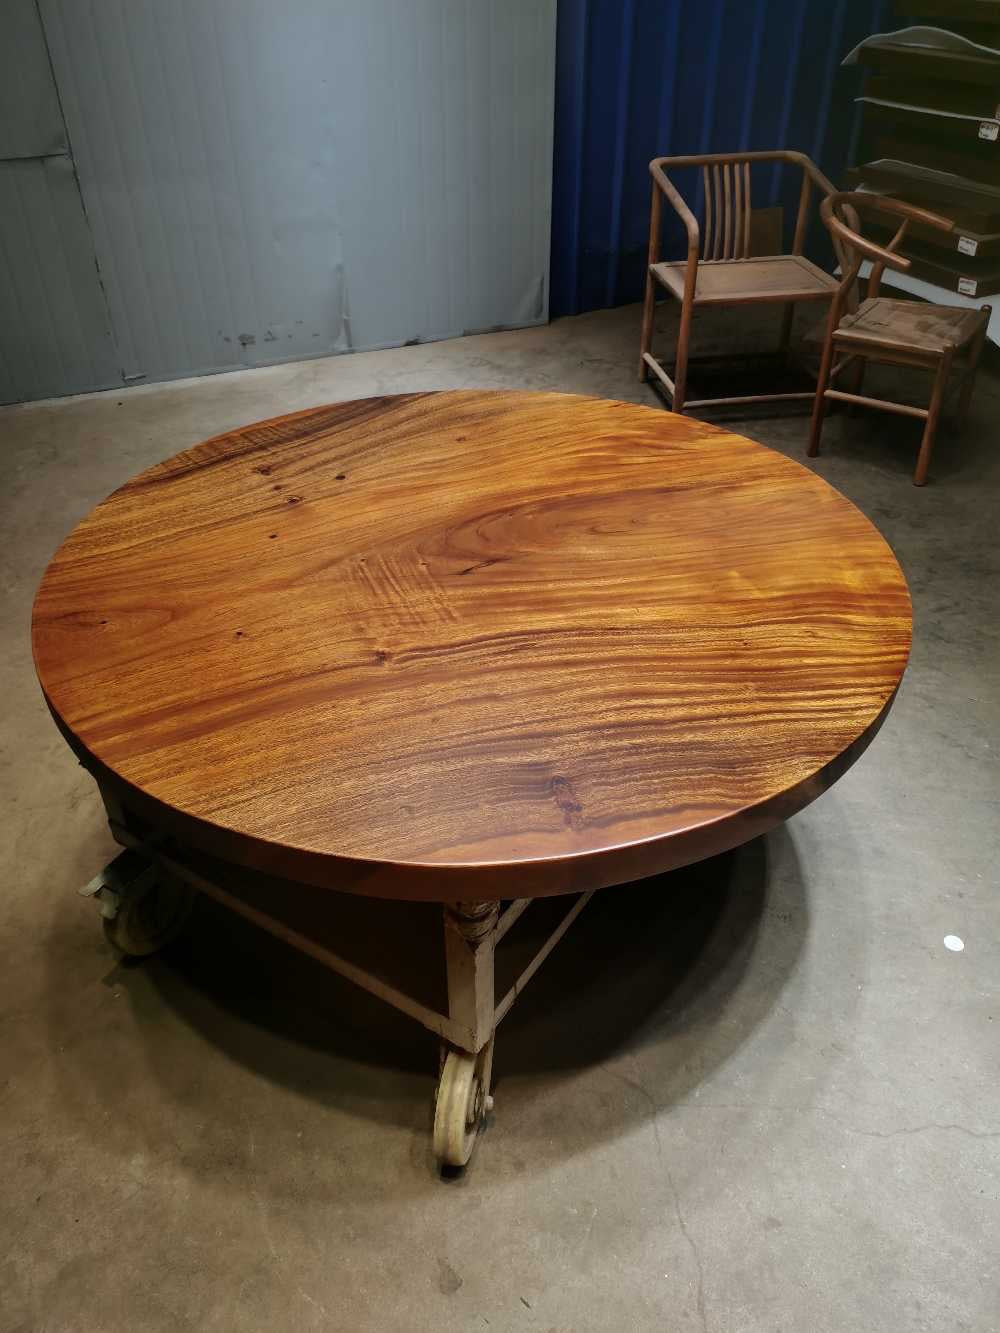 طاولة مستديرة من الخشب قطعة واحدة، طاولة مستديرة من الخشب 60، طاولة مستديرة من الخشب الحقيقي، طاولة مستديرة من الخشب الطبيعي